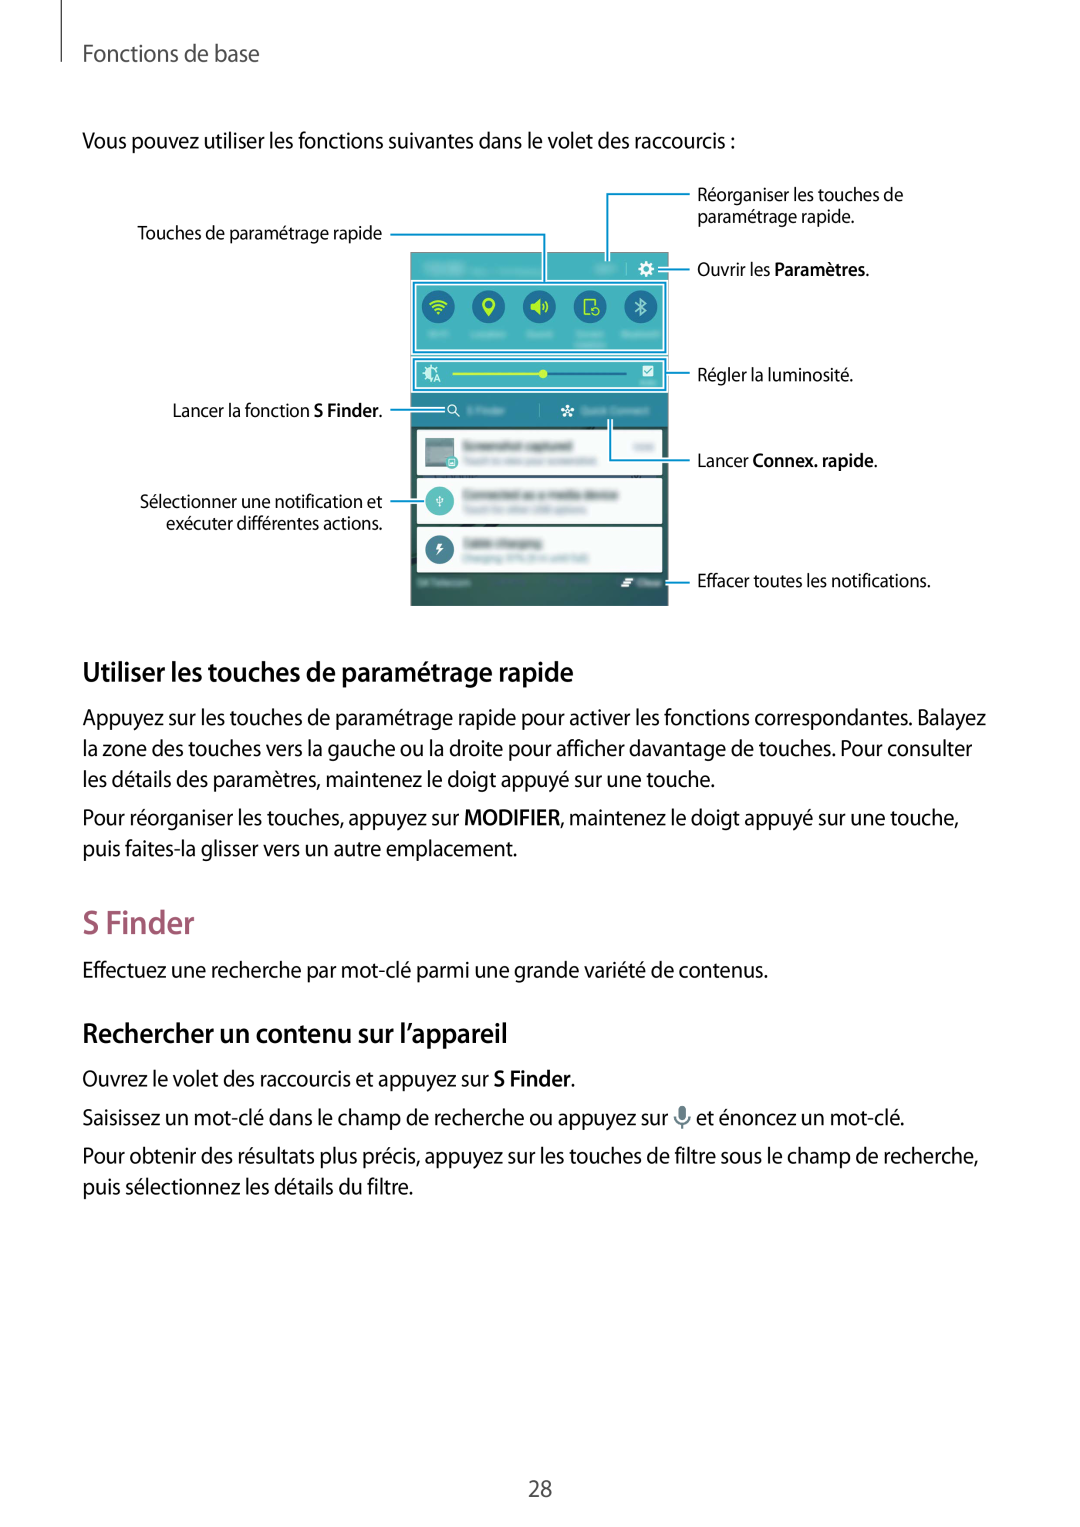 Samsung SM-G920FZWAXEF manual S Finder, Utiliser les touches de paramétrage rapide, Rechercher un contenu sur l’appareil 